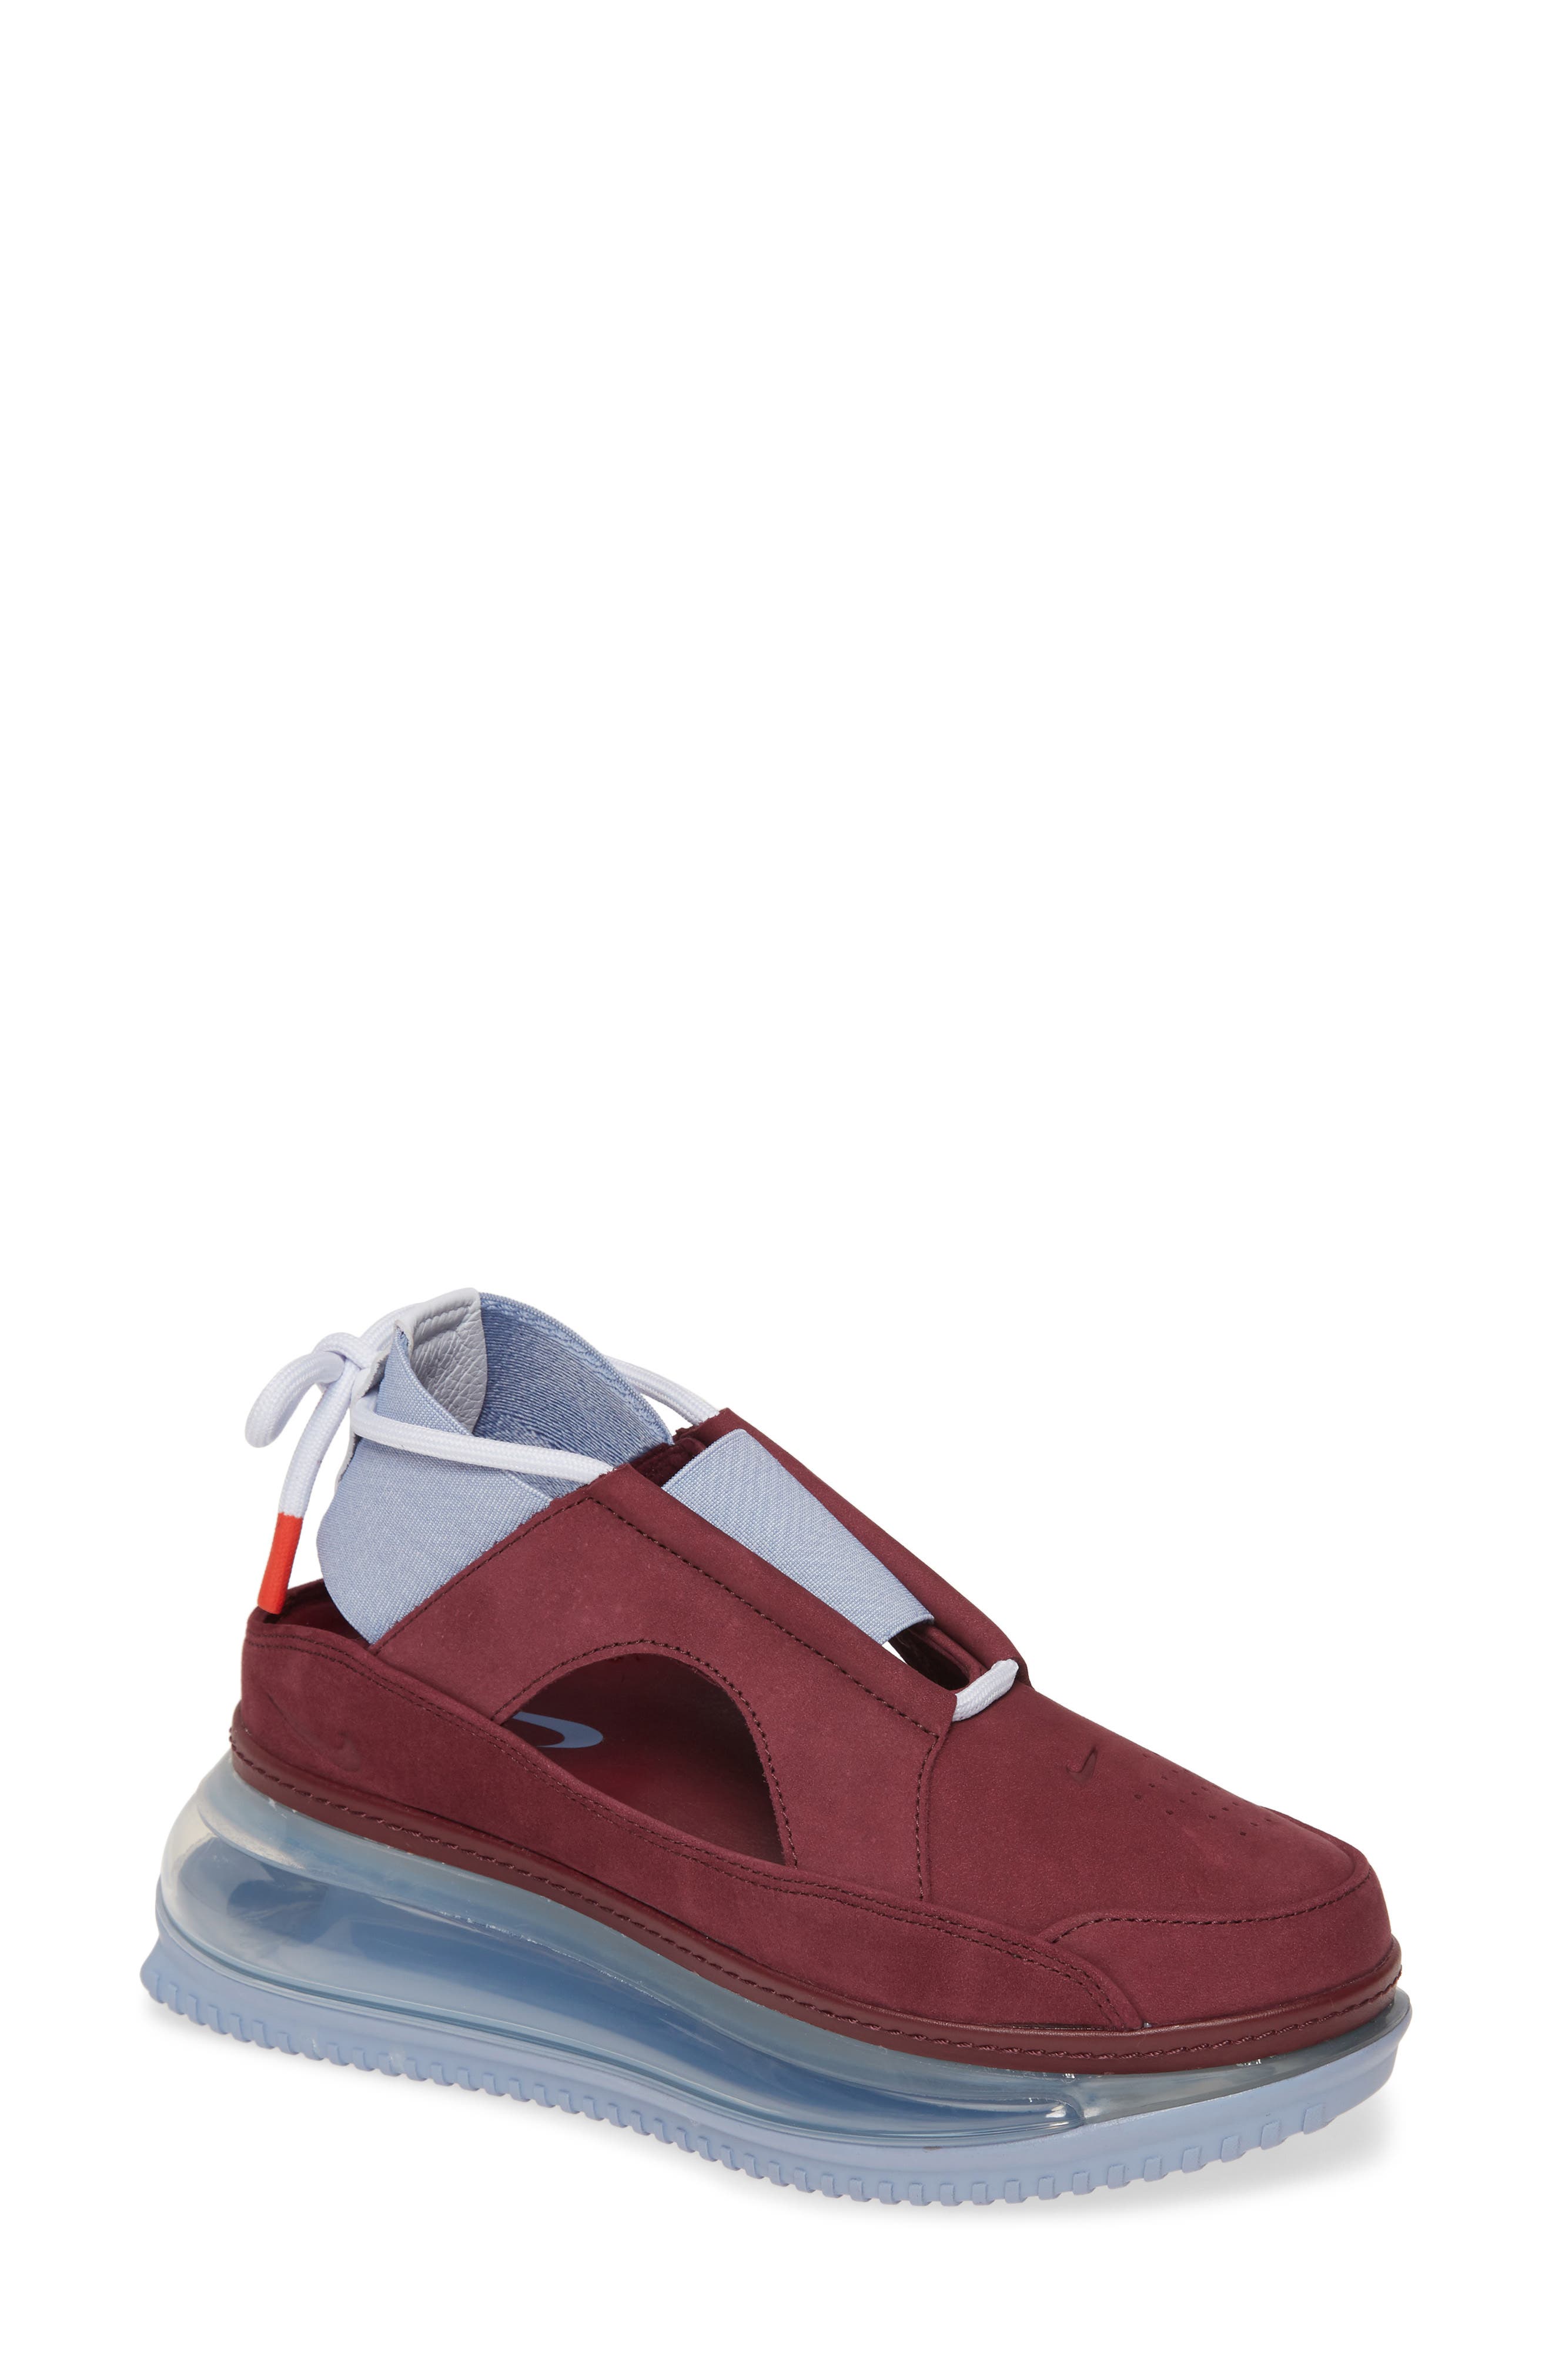 Nike Air Max FF 720 Cutout Sneaker 